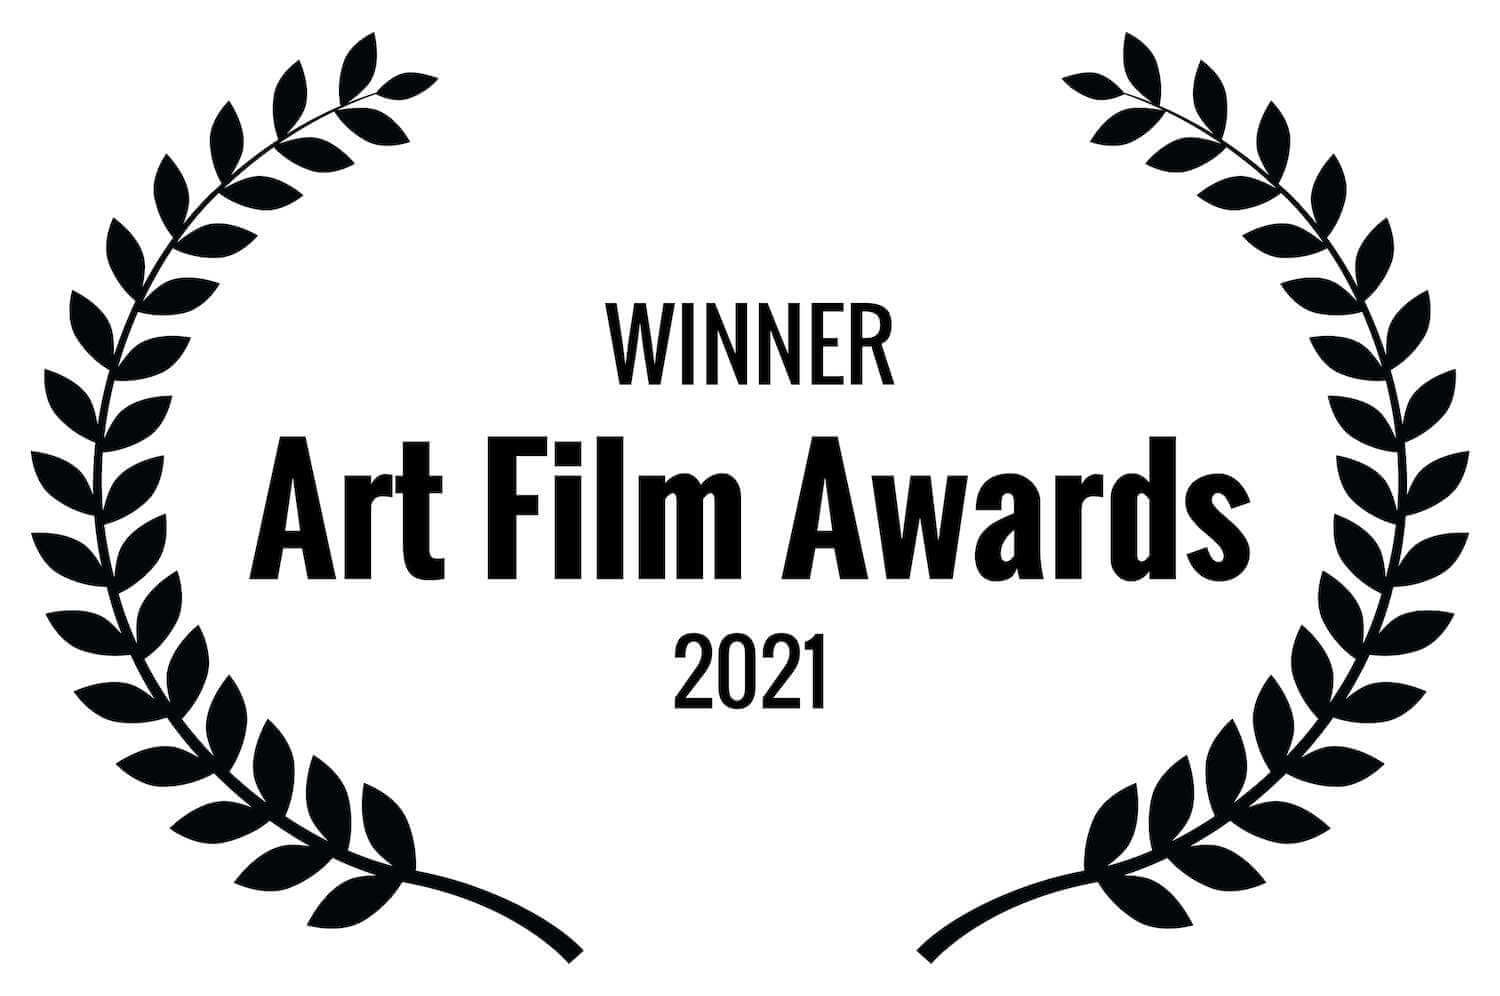 Winner Art Film Awards 2021